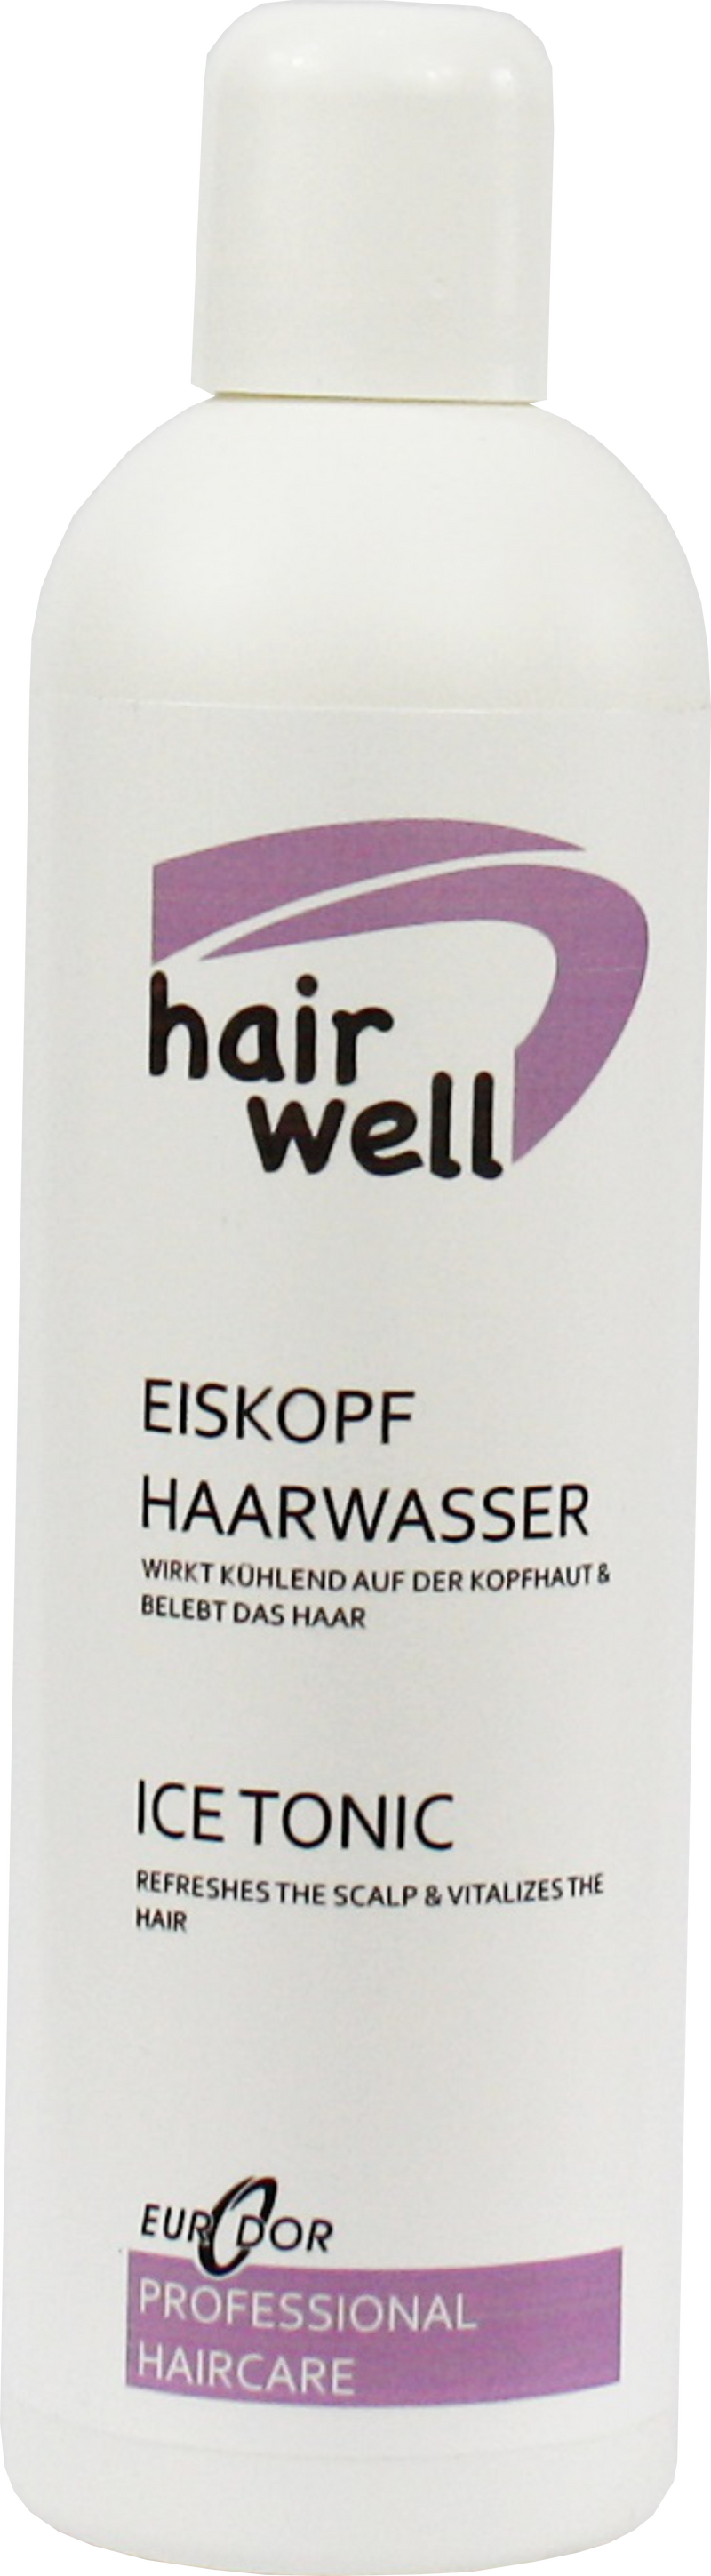 Hairwell Eiskopf Haarwasser